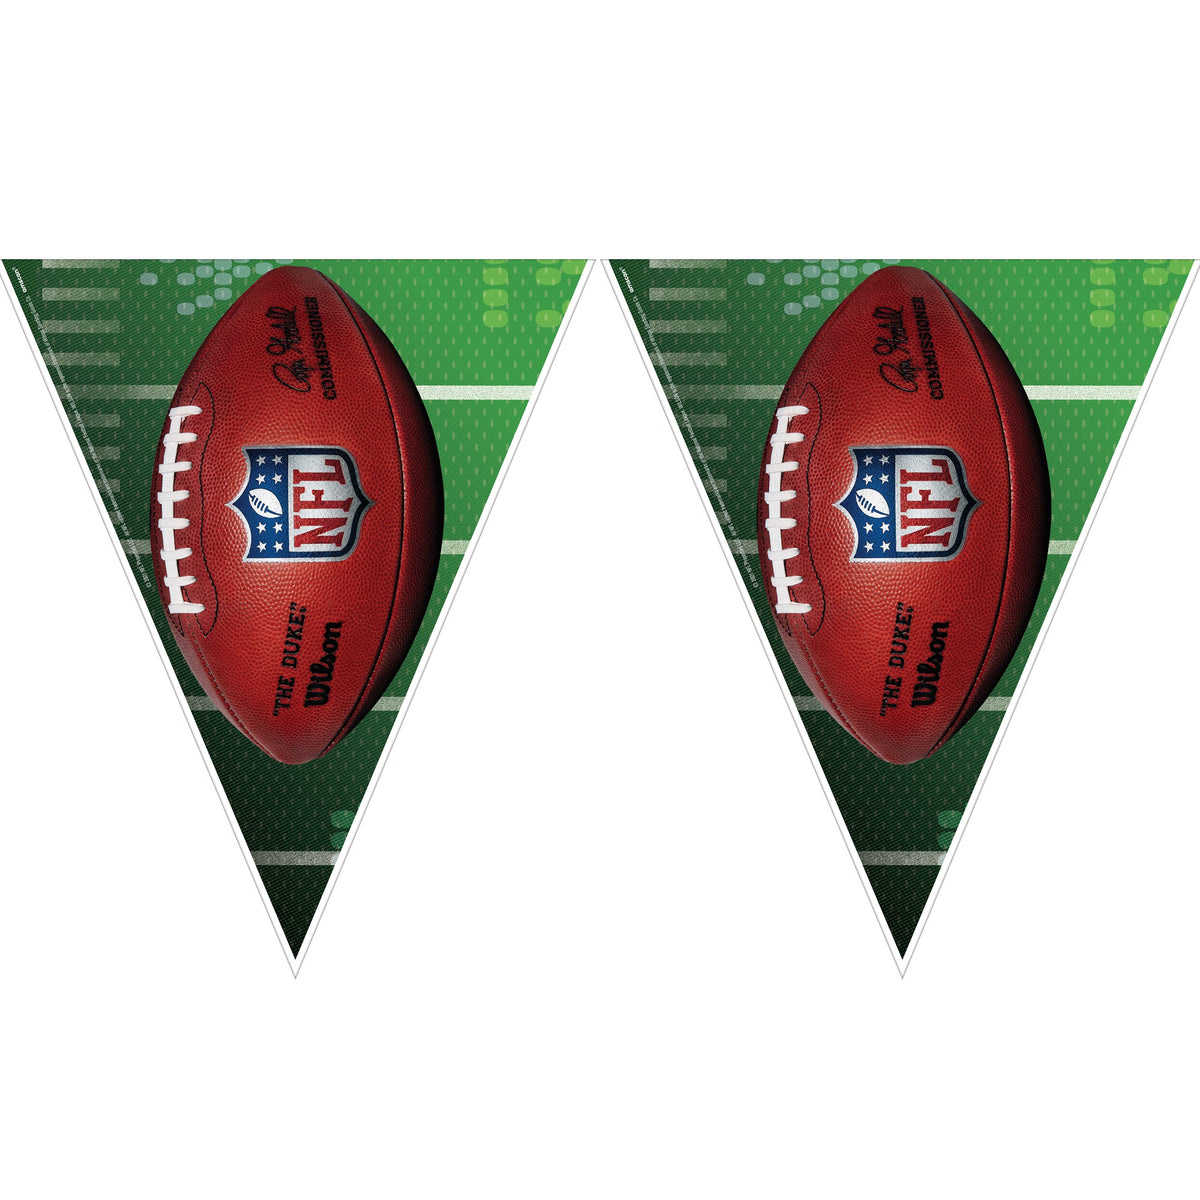 NFL Football Pennant flag 12' x 11"